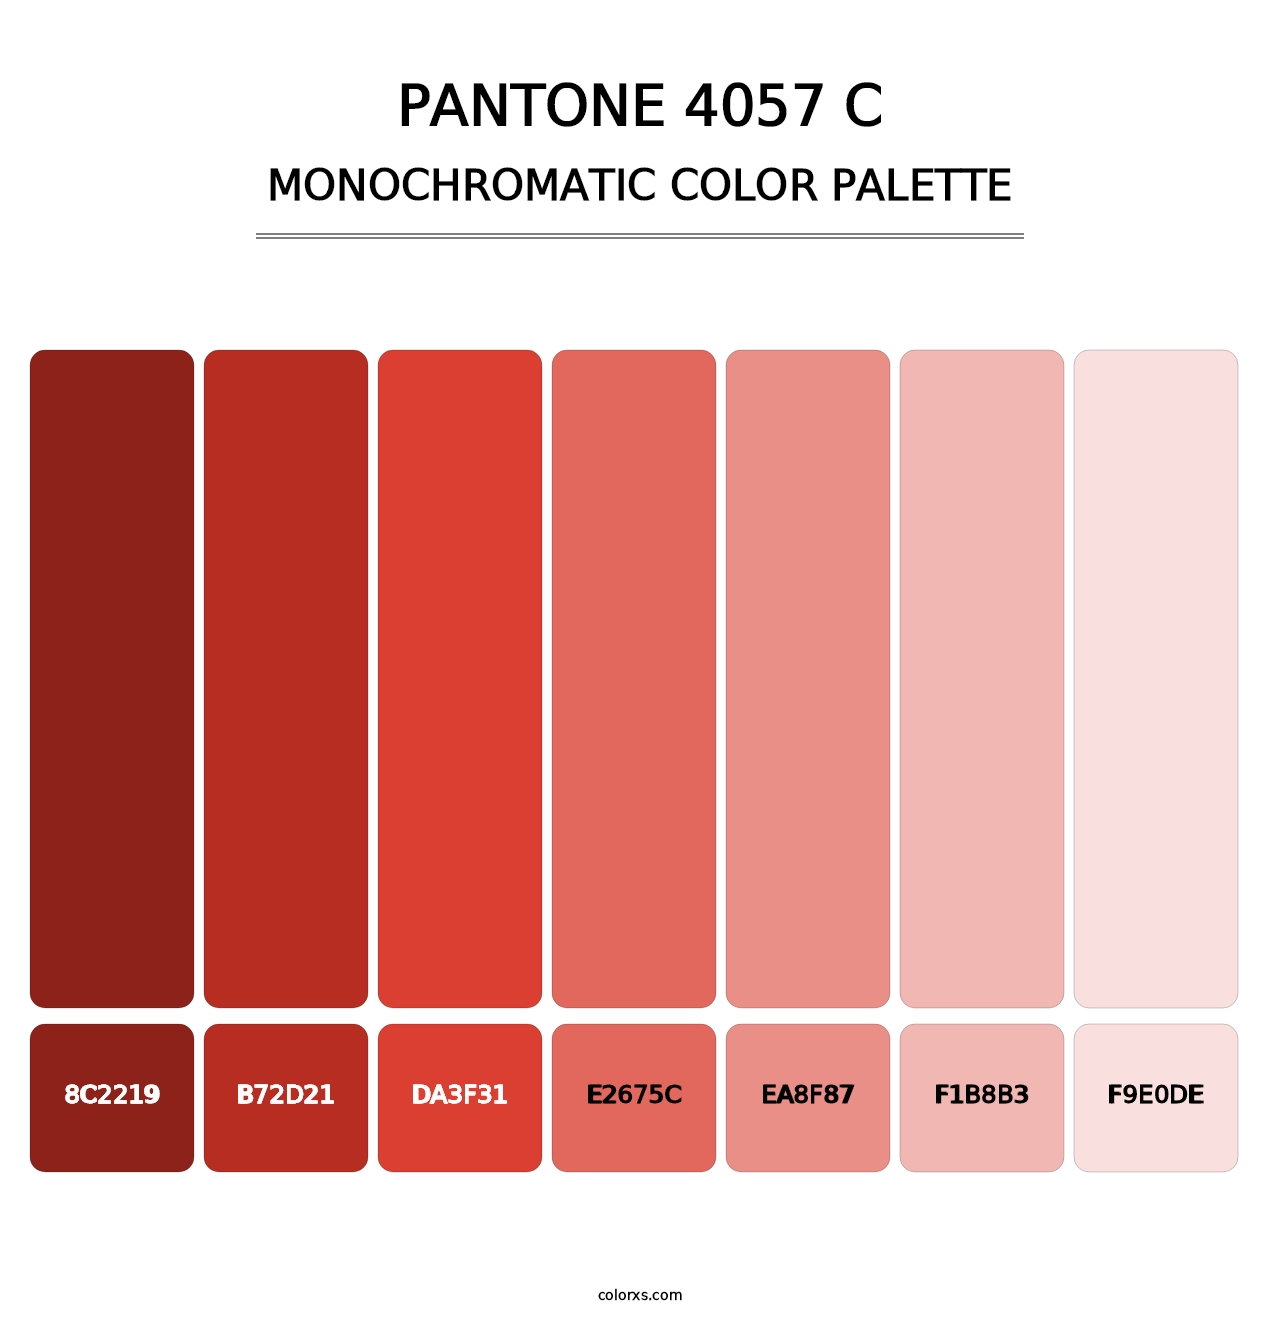 PANTONE 4057 C - Monochromatic Color Palette